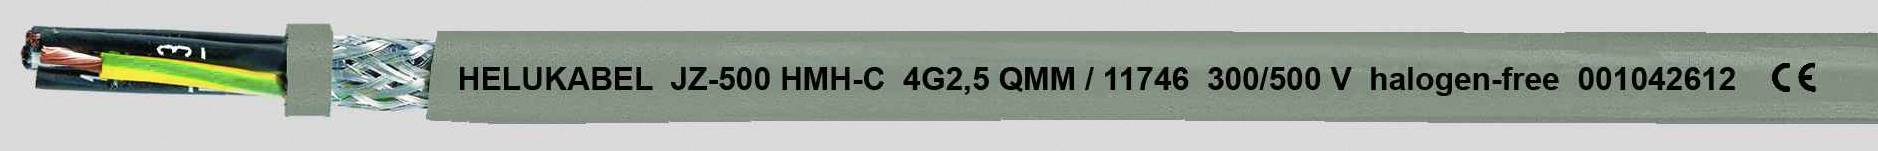 HELUKABEL JZ-500 HMH-C Steuerleitung 3 G 0.50 mm² Grau 11657-500 500 m